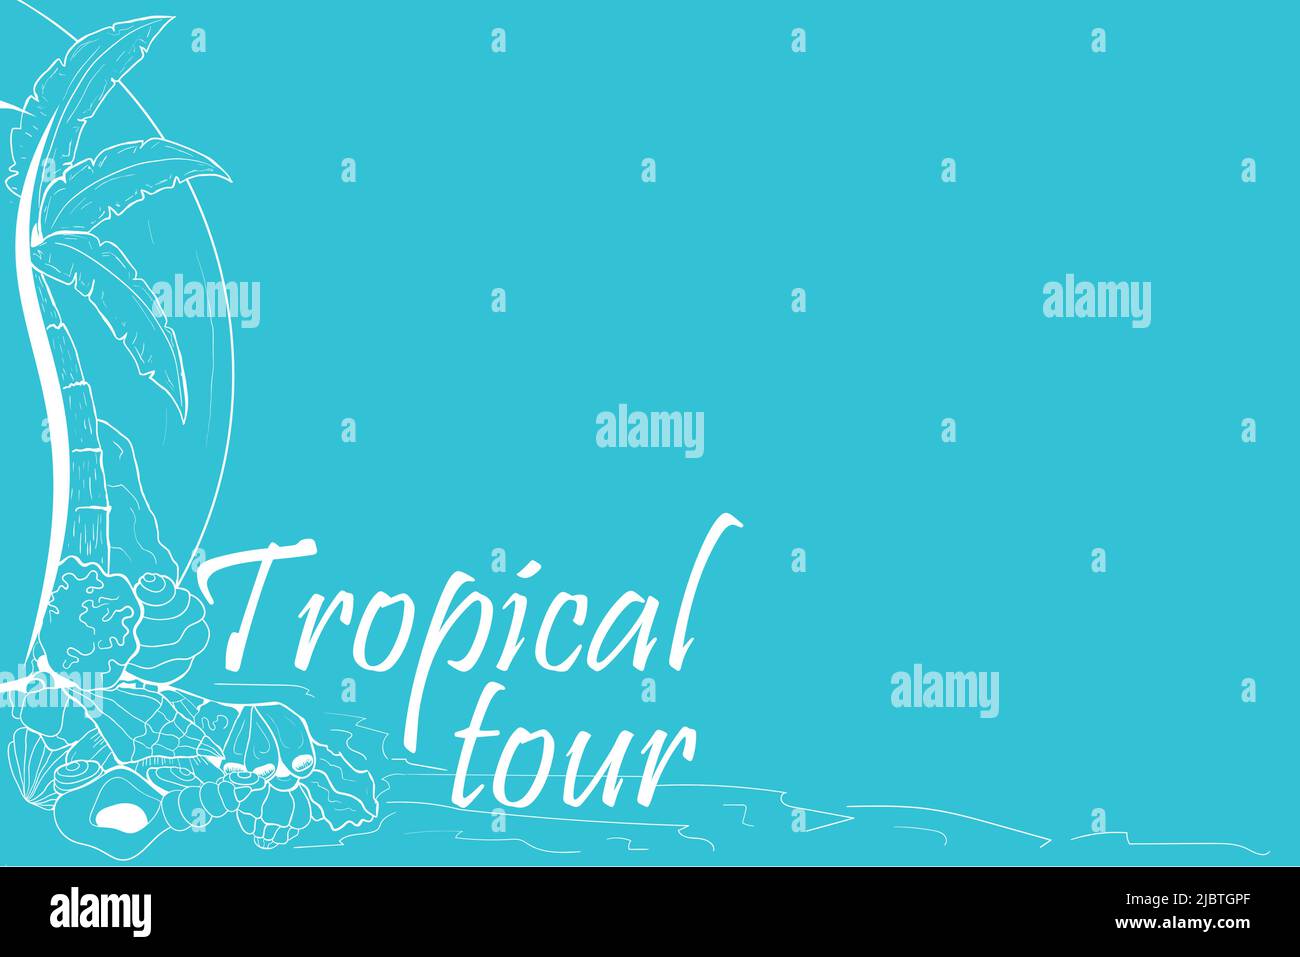 Visite tropicale fond avec palmier et coquillages pour l'agence de voyage, bannière, flyer. Illustration de Vecteur